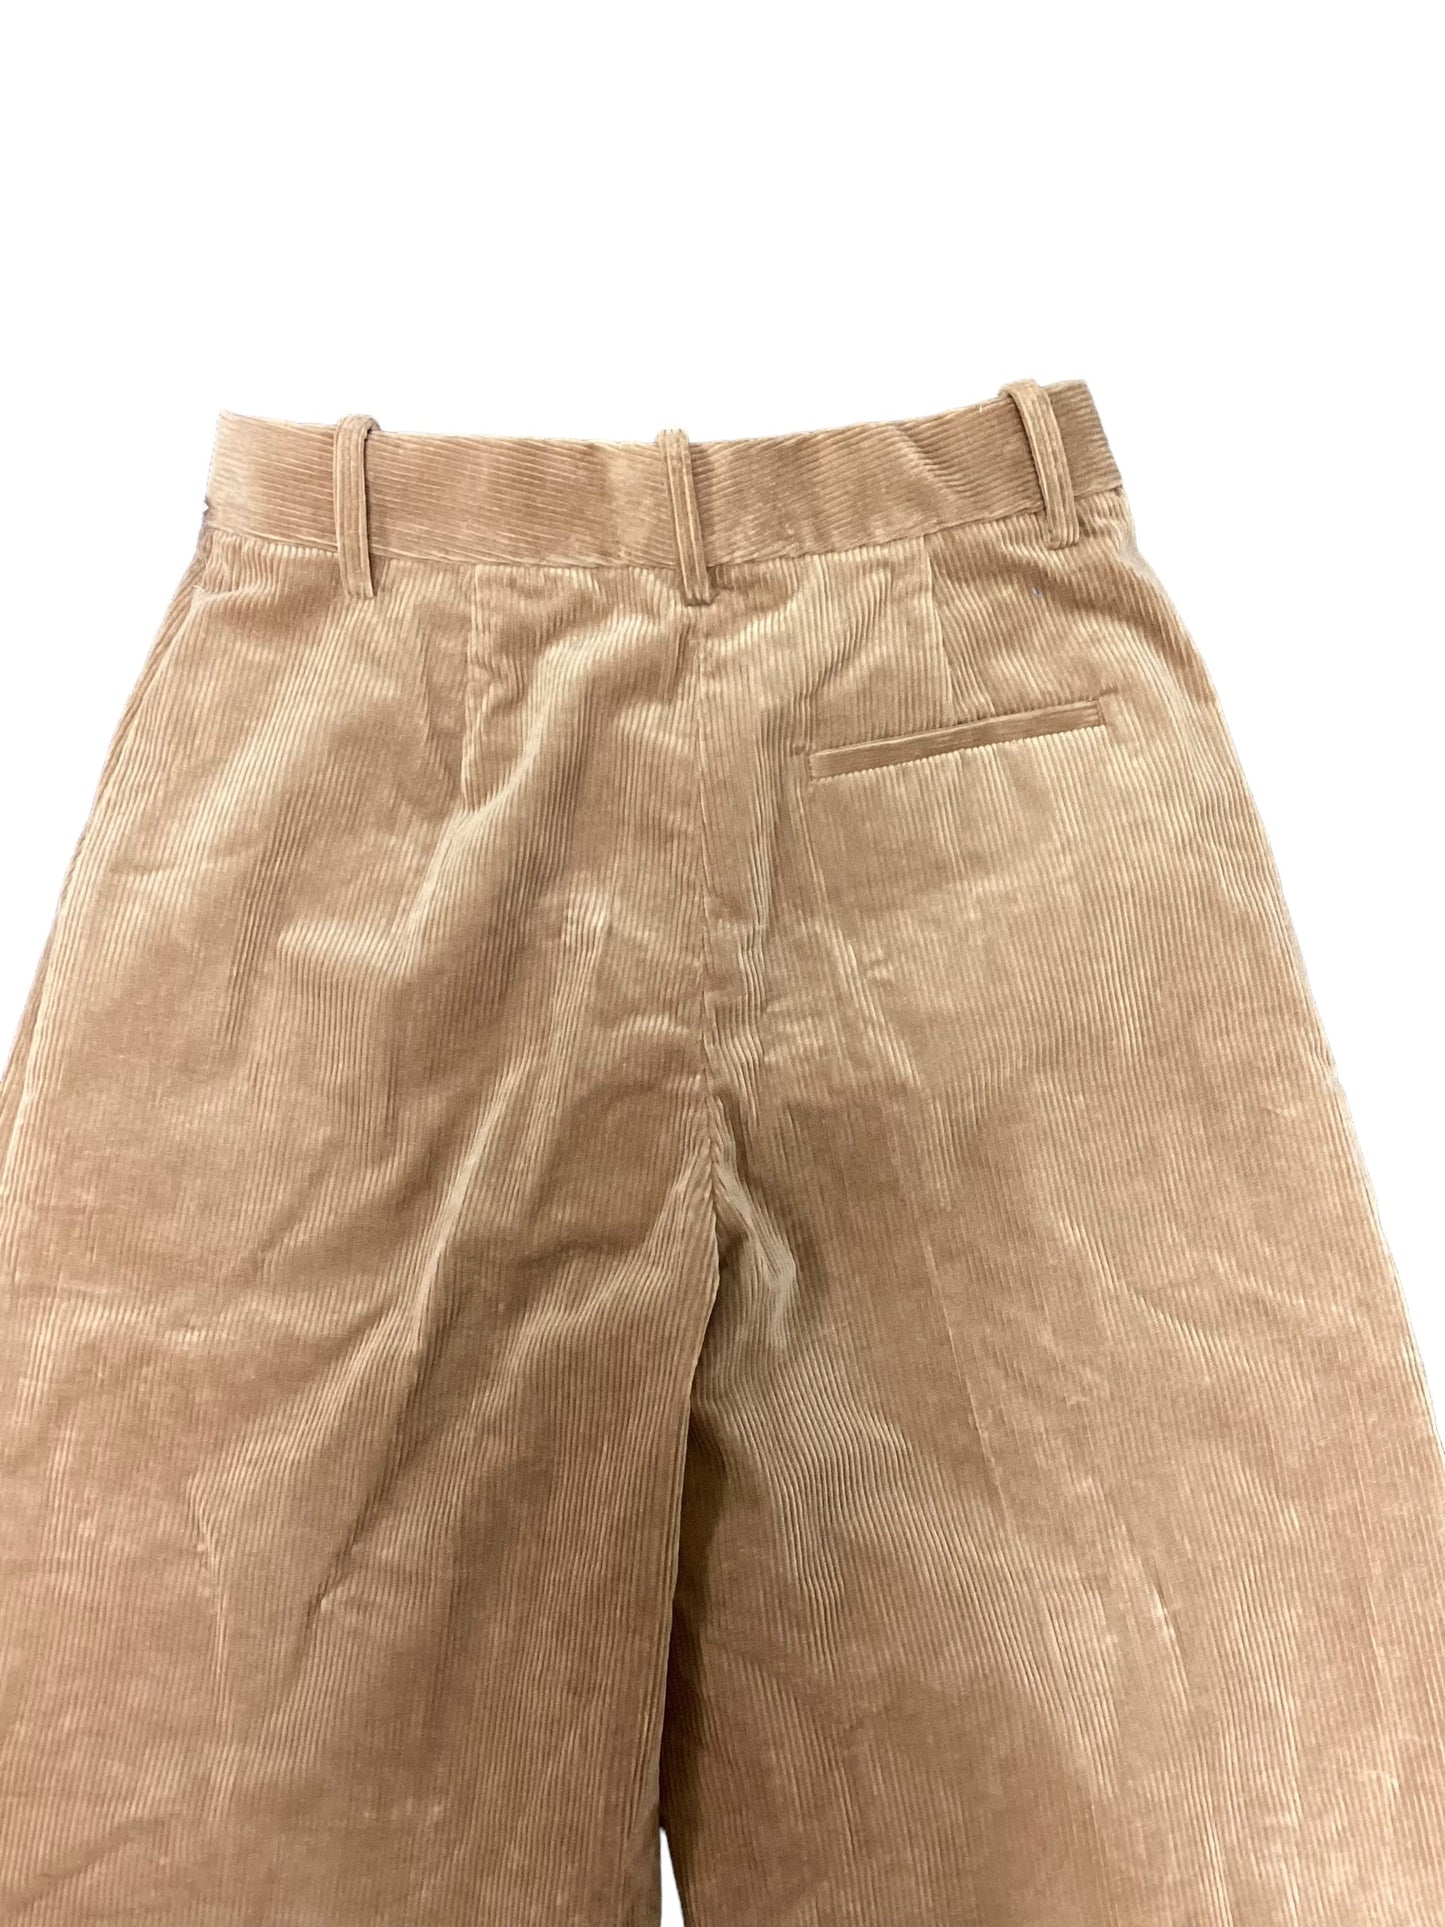 Brown Pants Corduroy Banana Republic, Size 4l